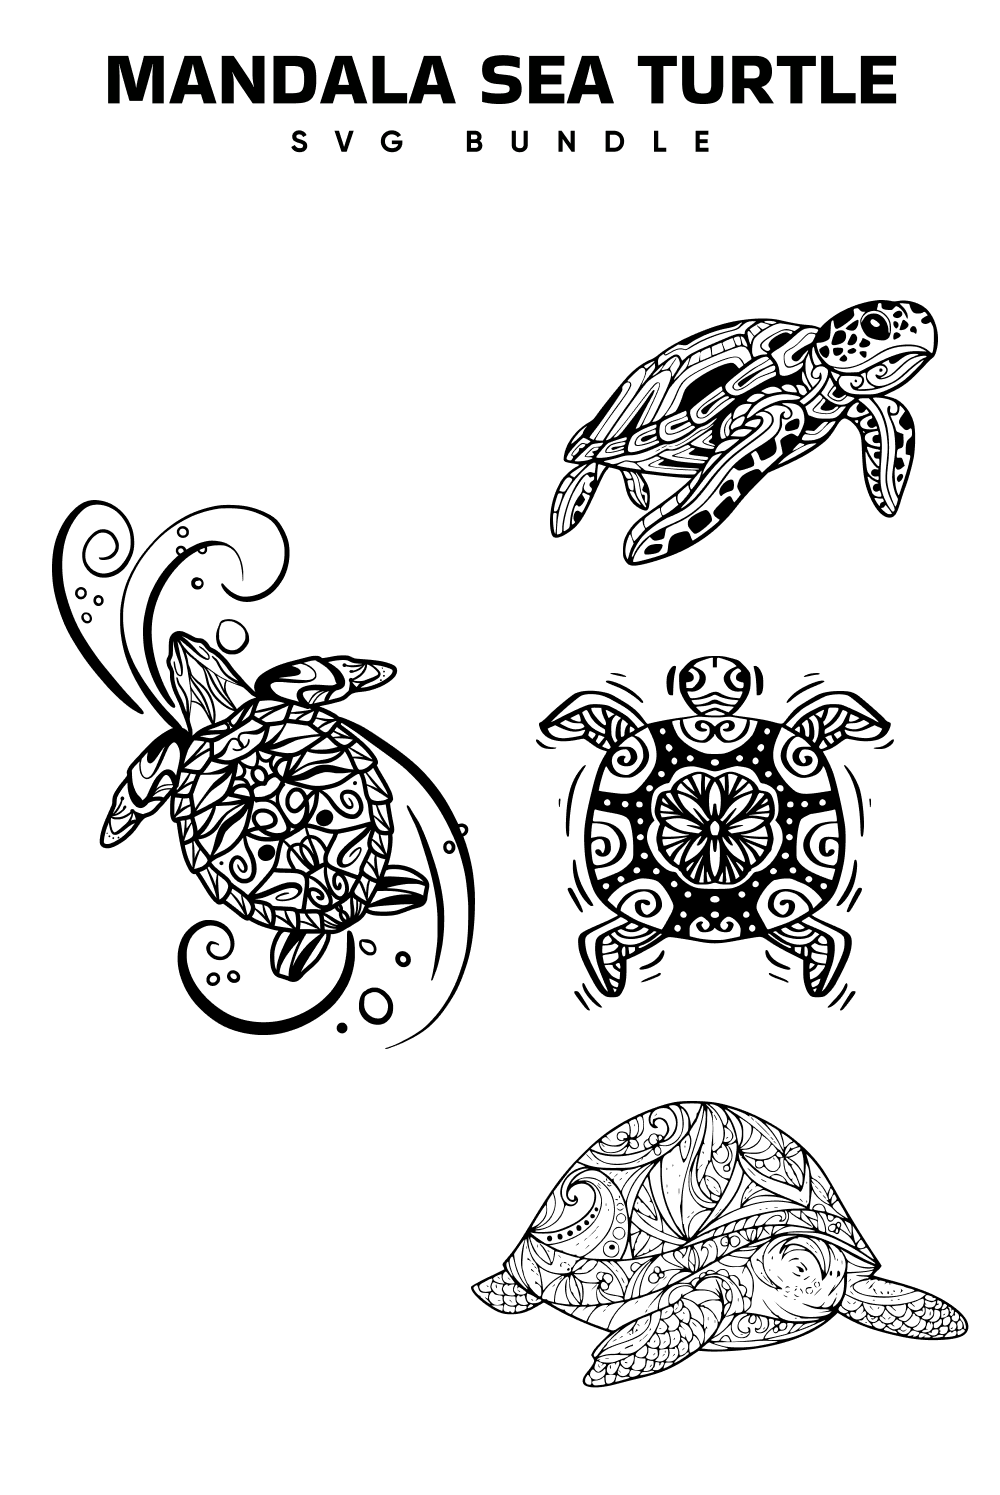 Mandala Sea Turtle Svg - Pinterest.